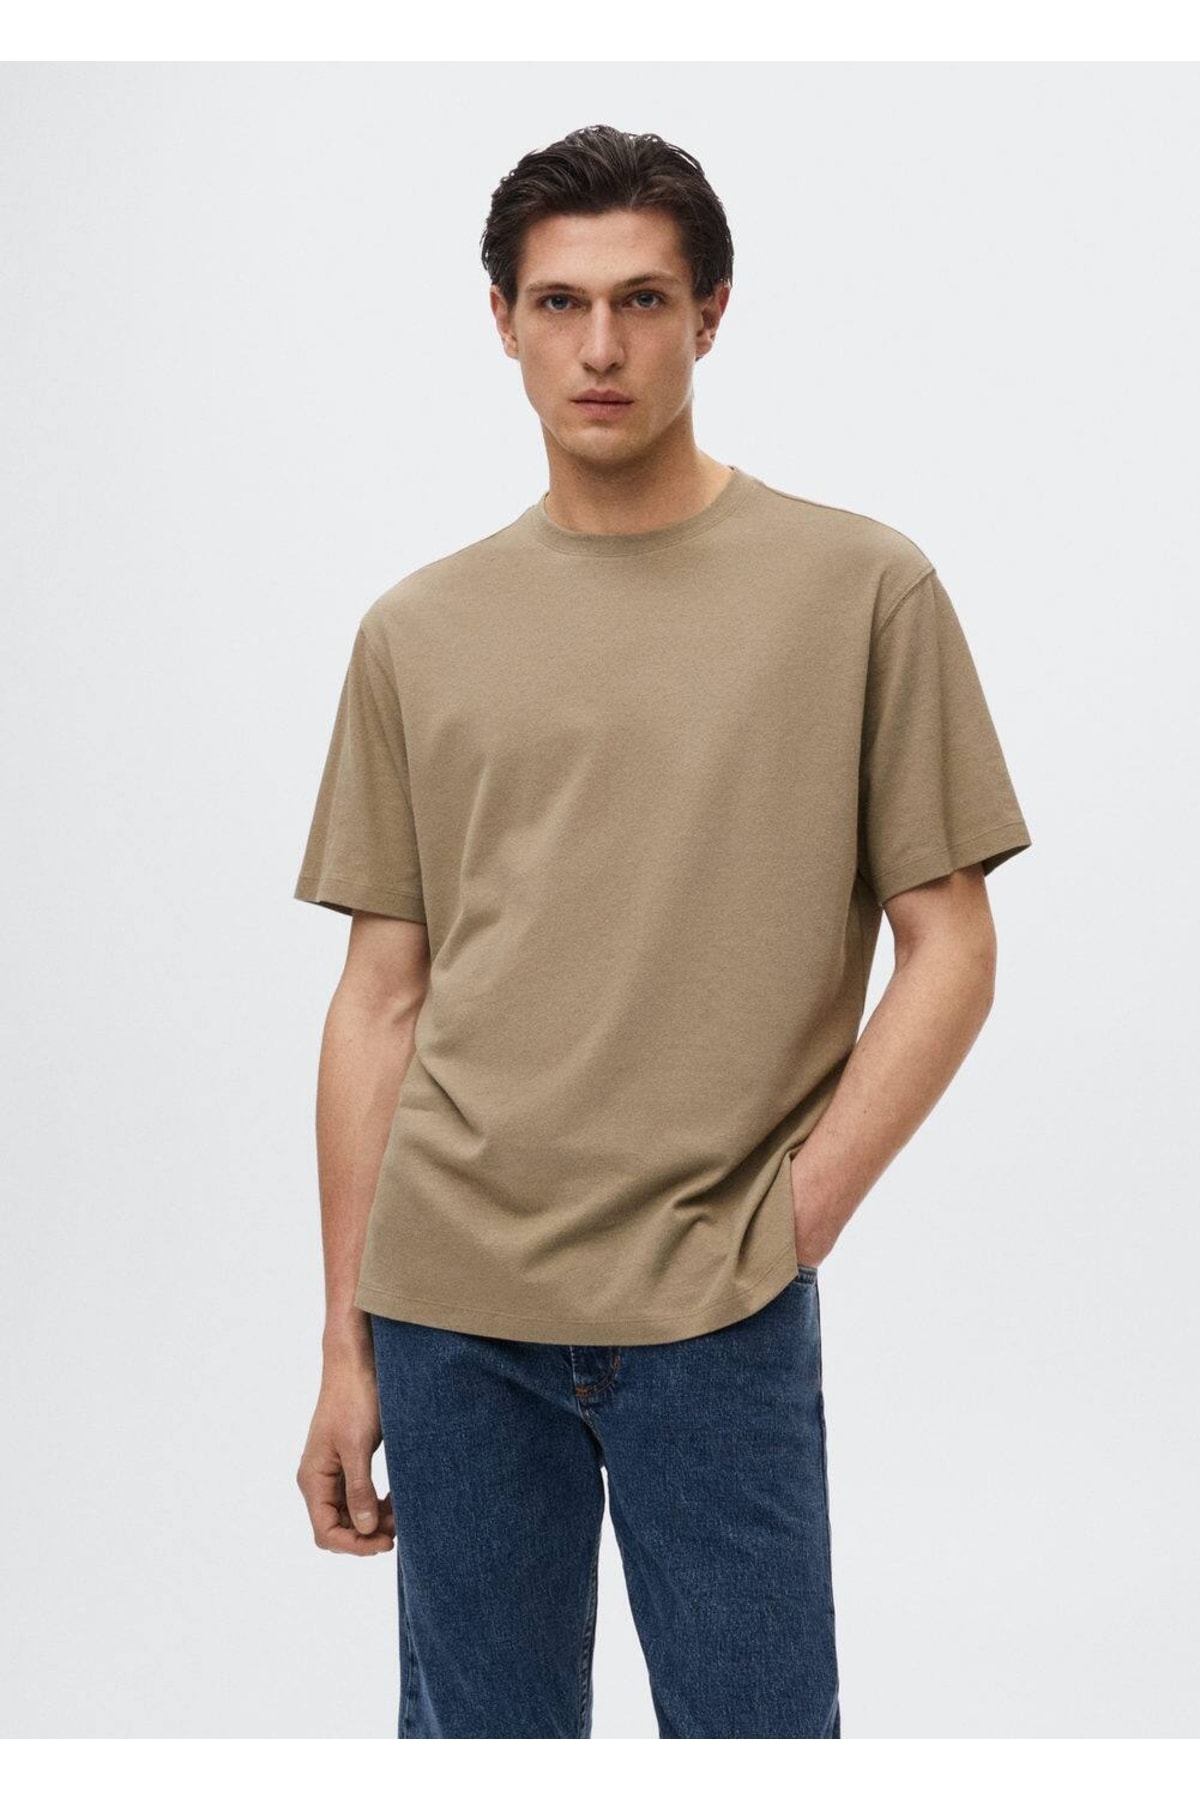 تصویر تی شرت اورجینال مردانه برند Mango کد b37040935 